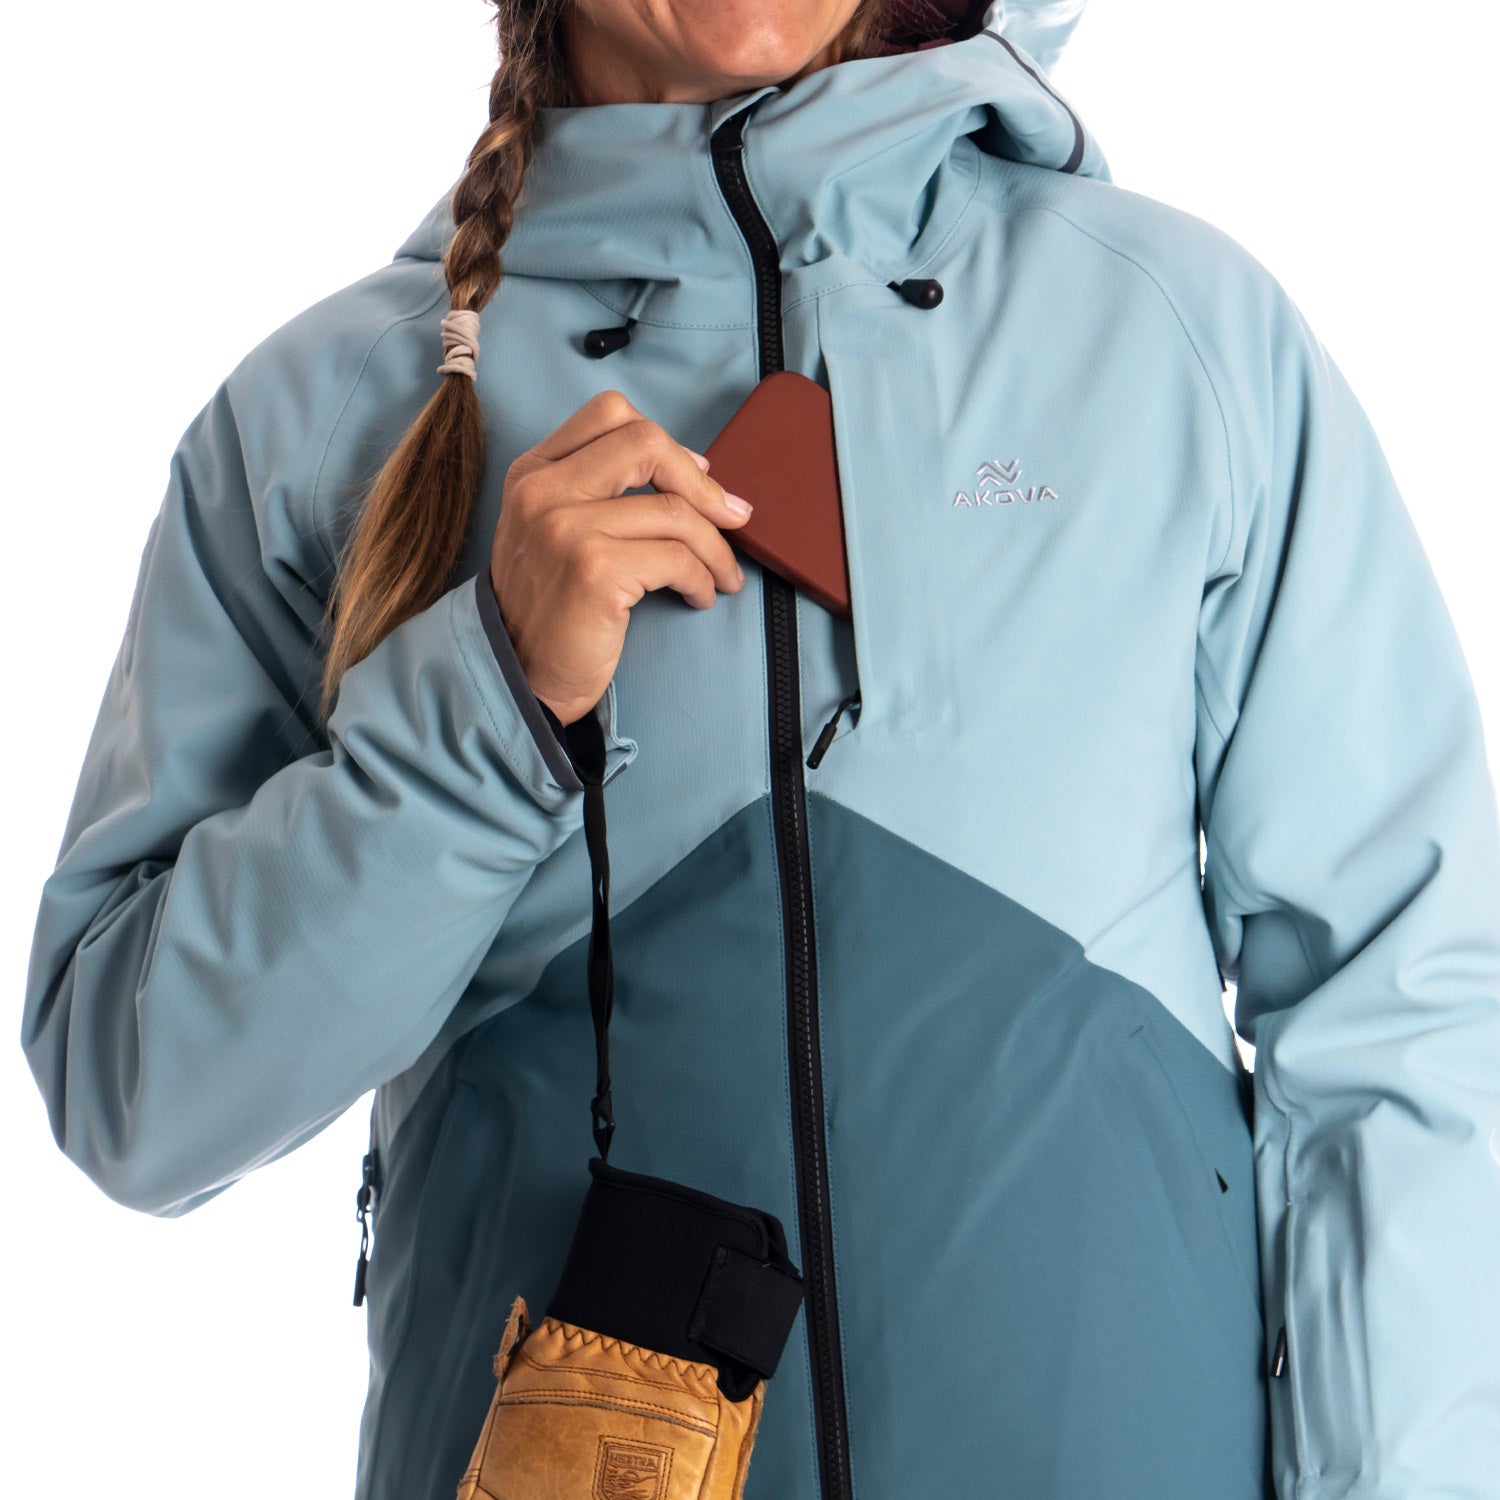 Avalanche Women's Lightweight Convertible Hood Zip Up Jacket With Zipper  Pockets